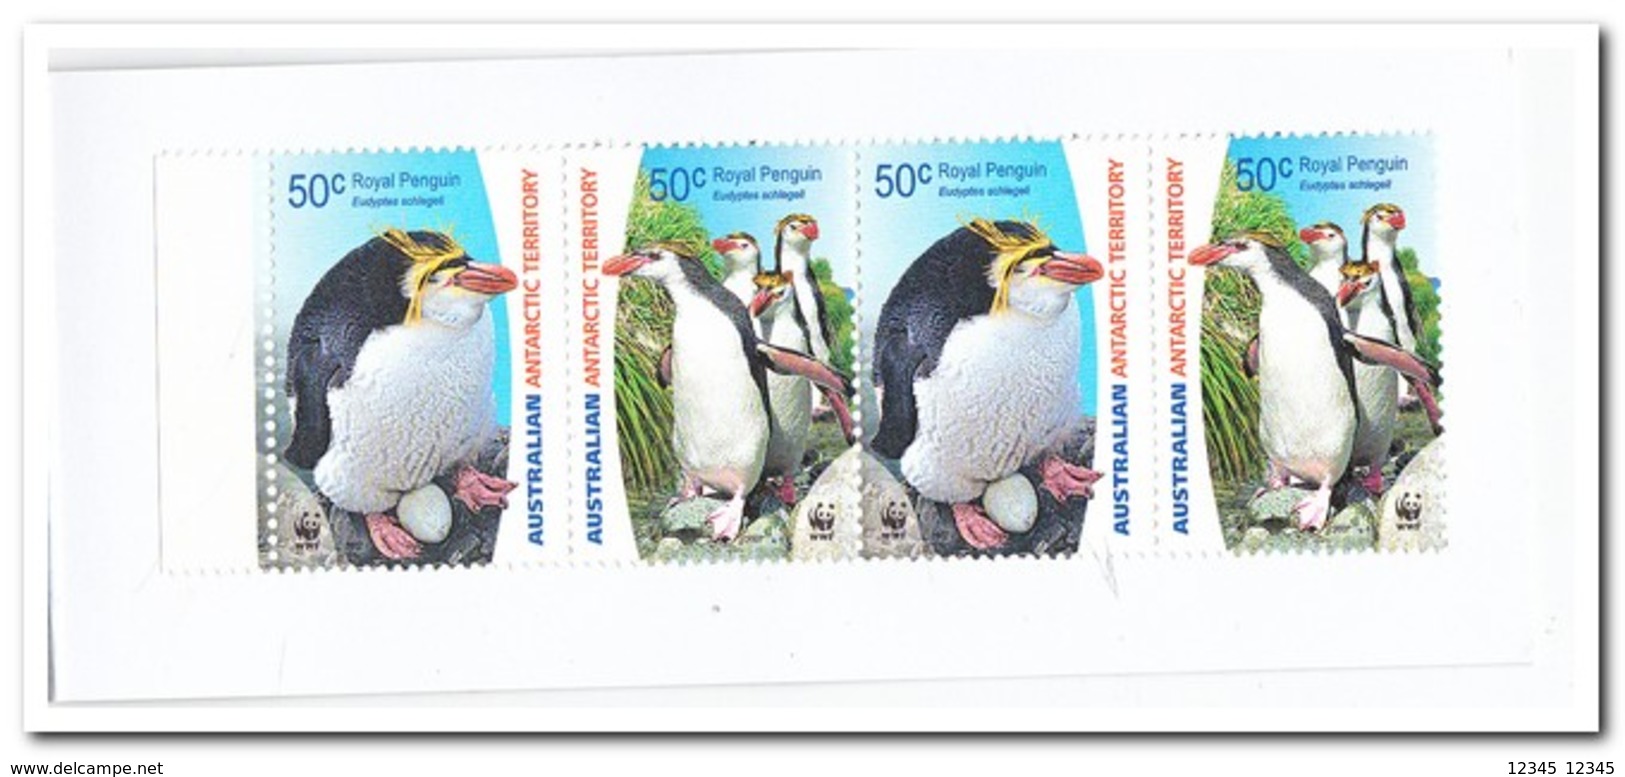 Australisch Antarctica 2007, Postfris MNH, Birds, WWF ( Booklet ) - Ongebruikt